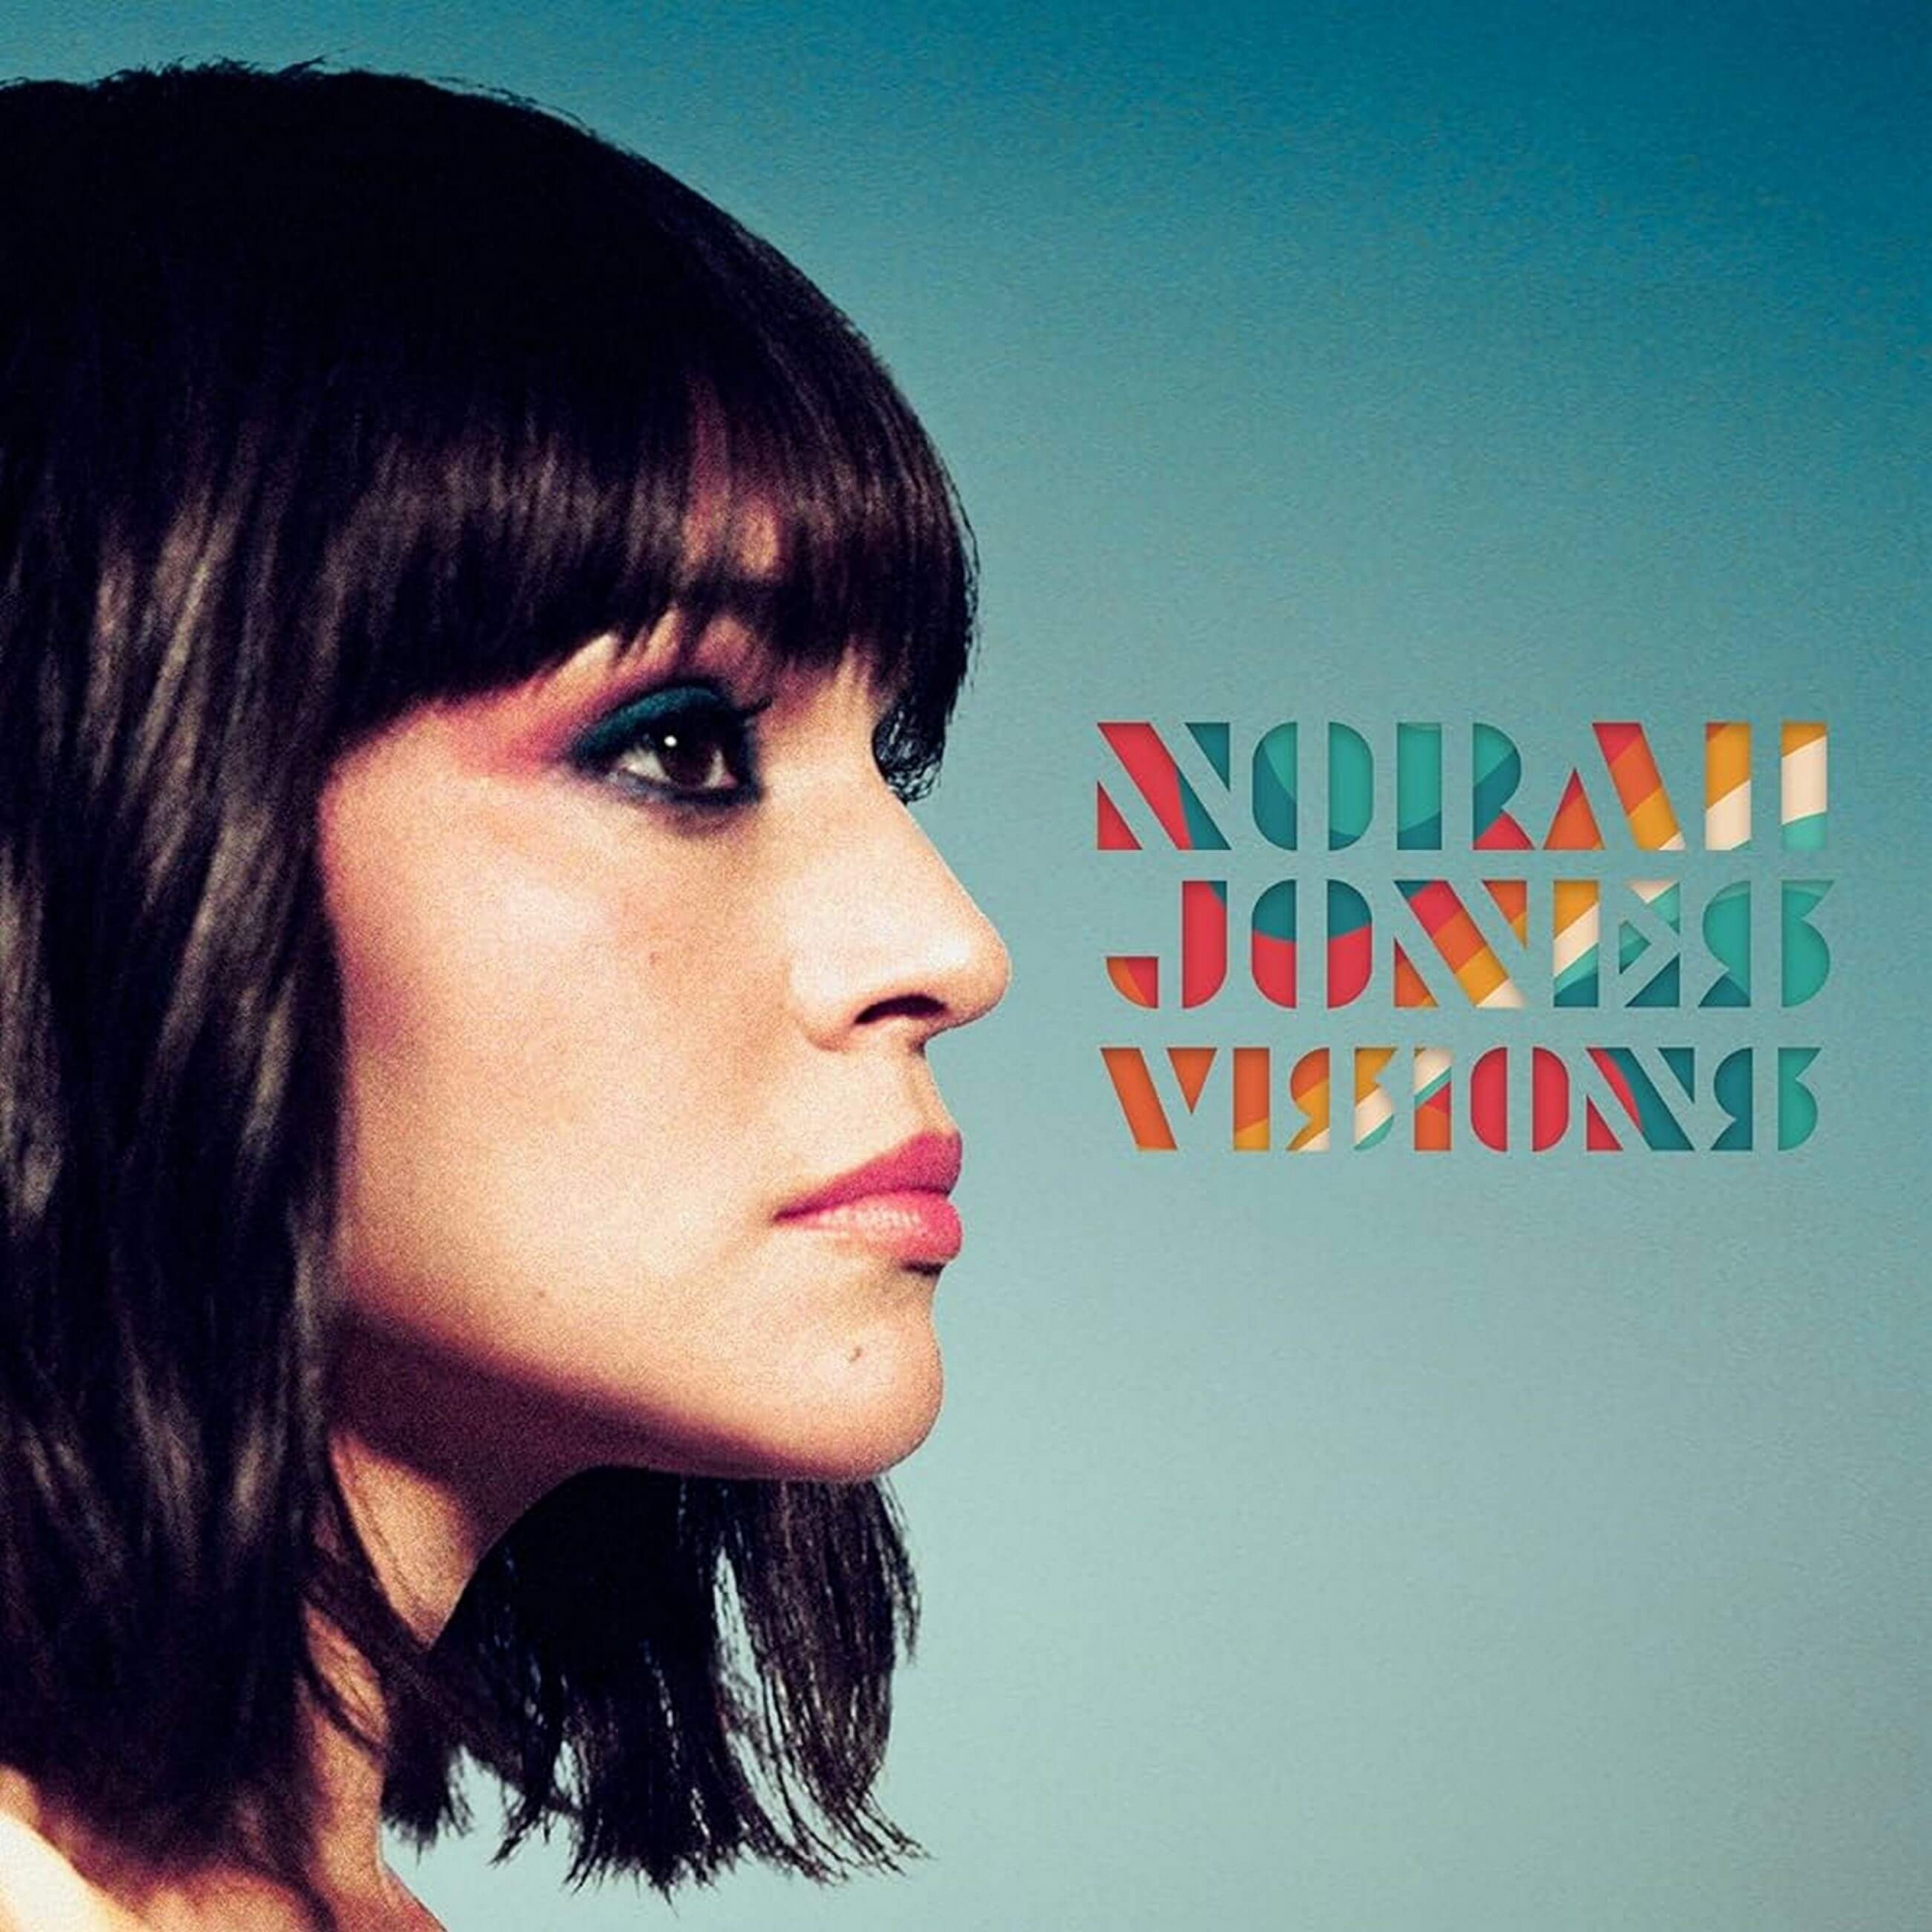 Norah Jones Visions cover